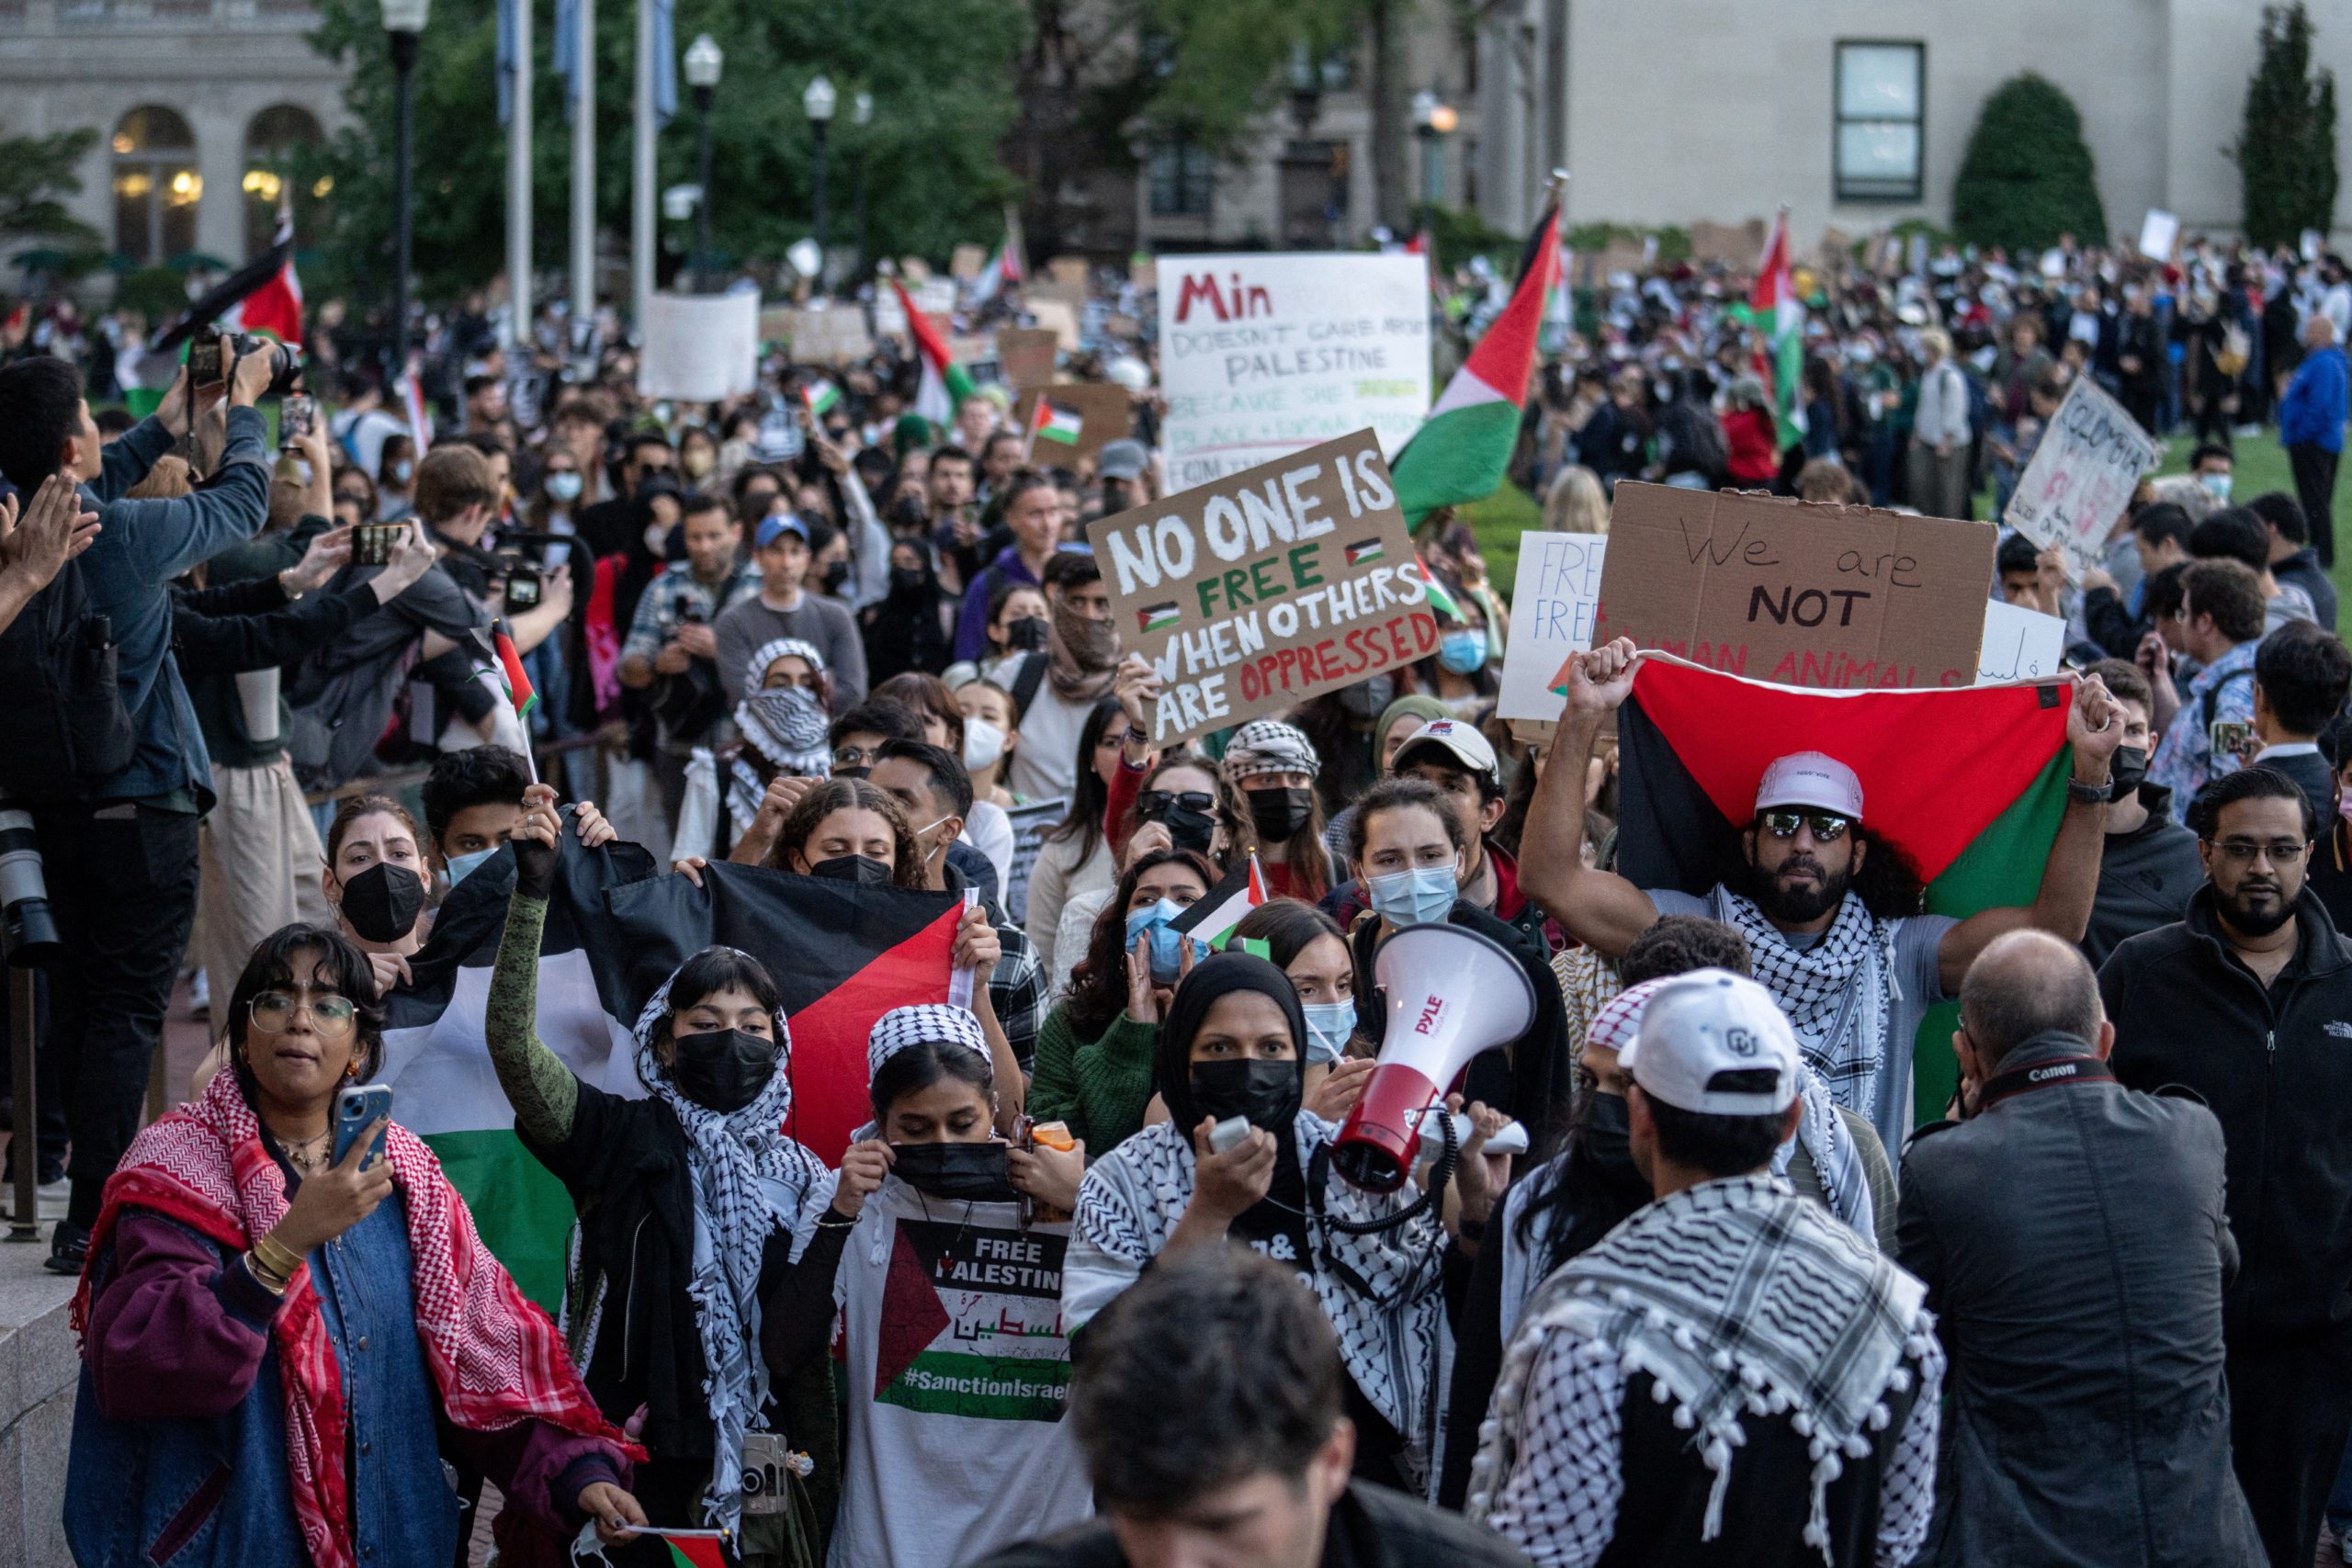 مرشحون مؤيدون للفلسطينيين يشاركون في حركة المطالبة بحركة التيار المستمر في غزة، في جامعة كولومبيا -رويترز